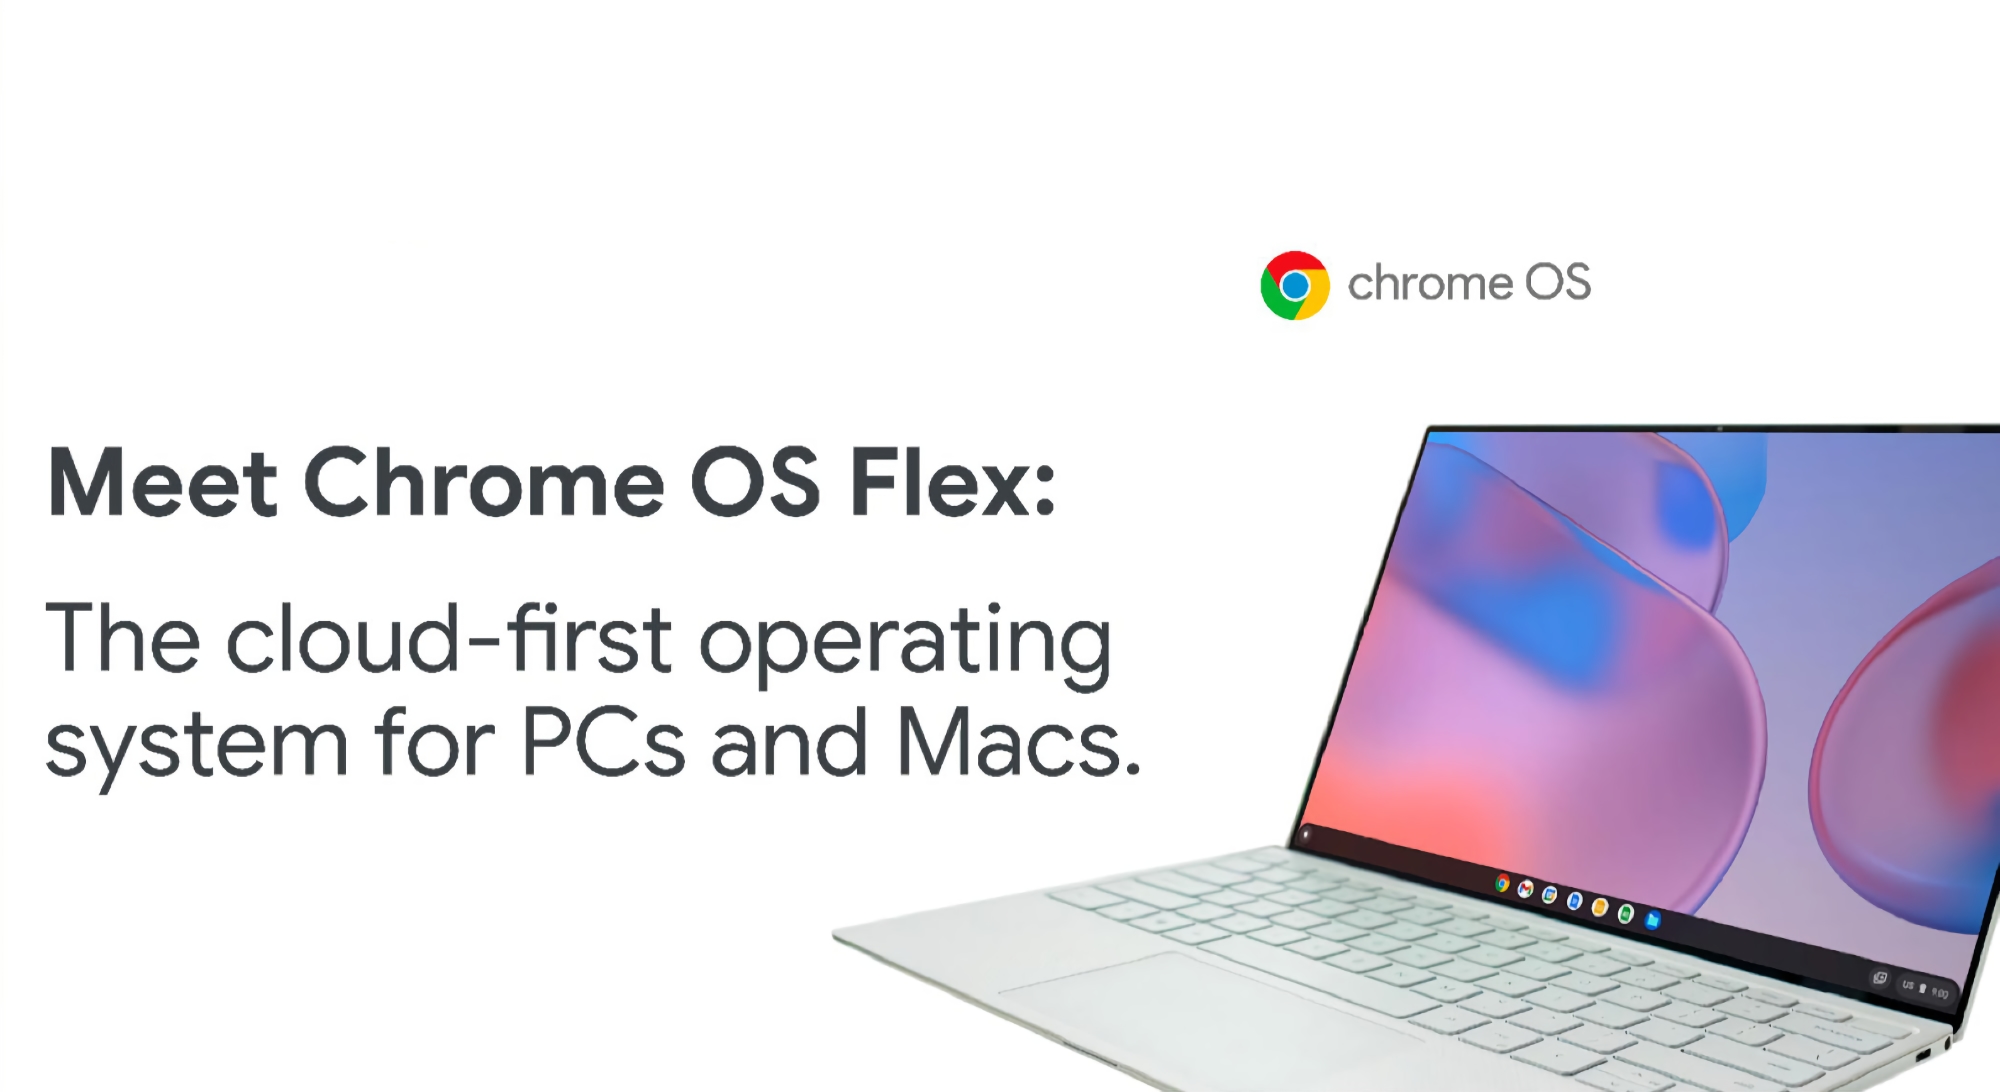 Google wprowadza Chrome OS Flex: system operacyjny oparty na chmurze, który zamieni Twój stary komputer PC i Mac w Chromebooka